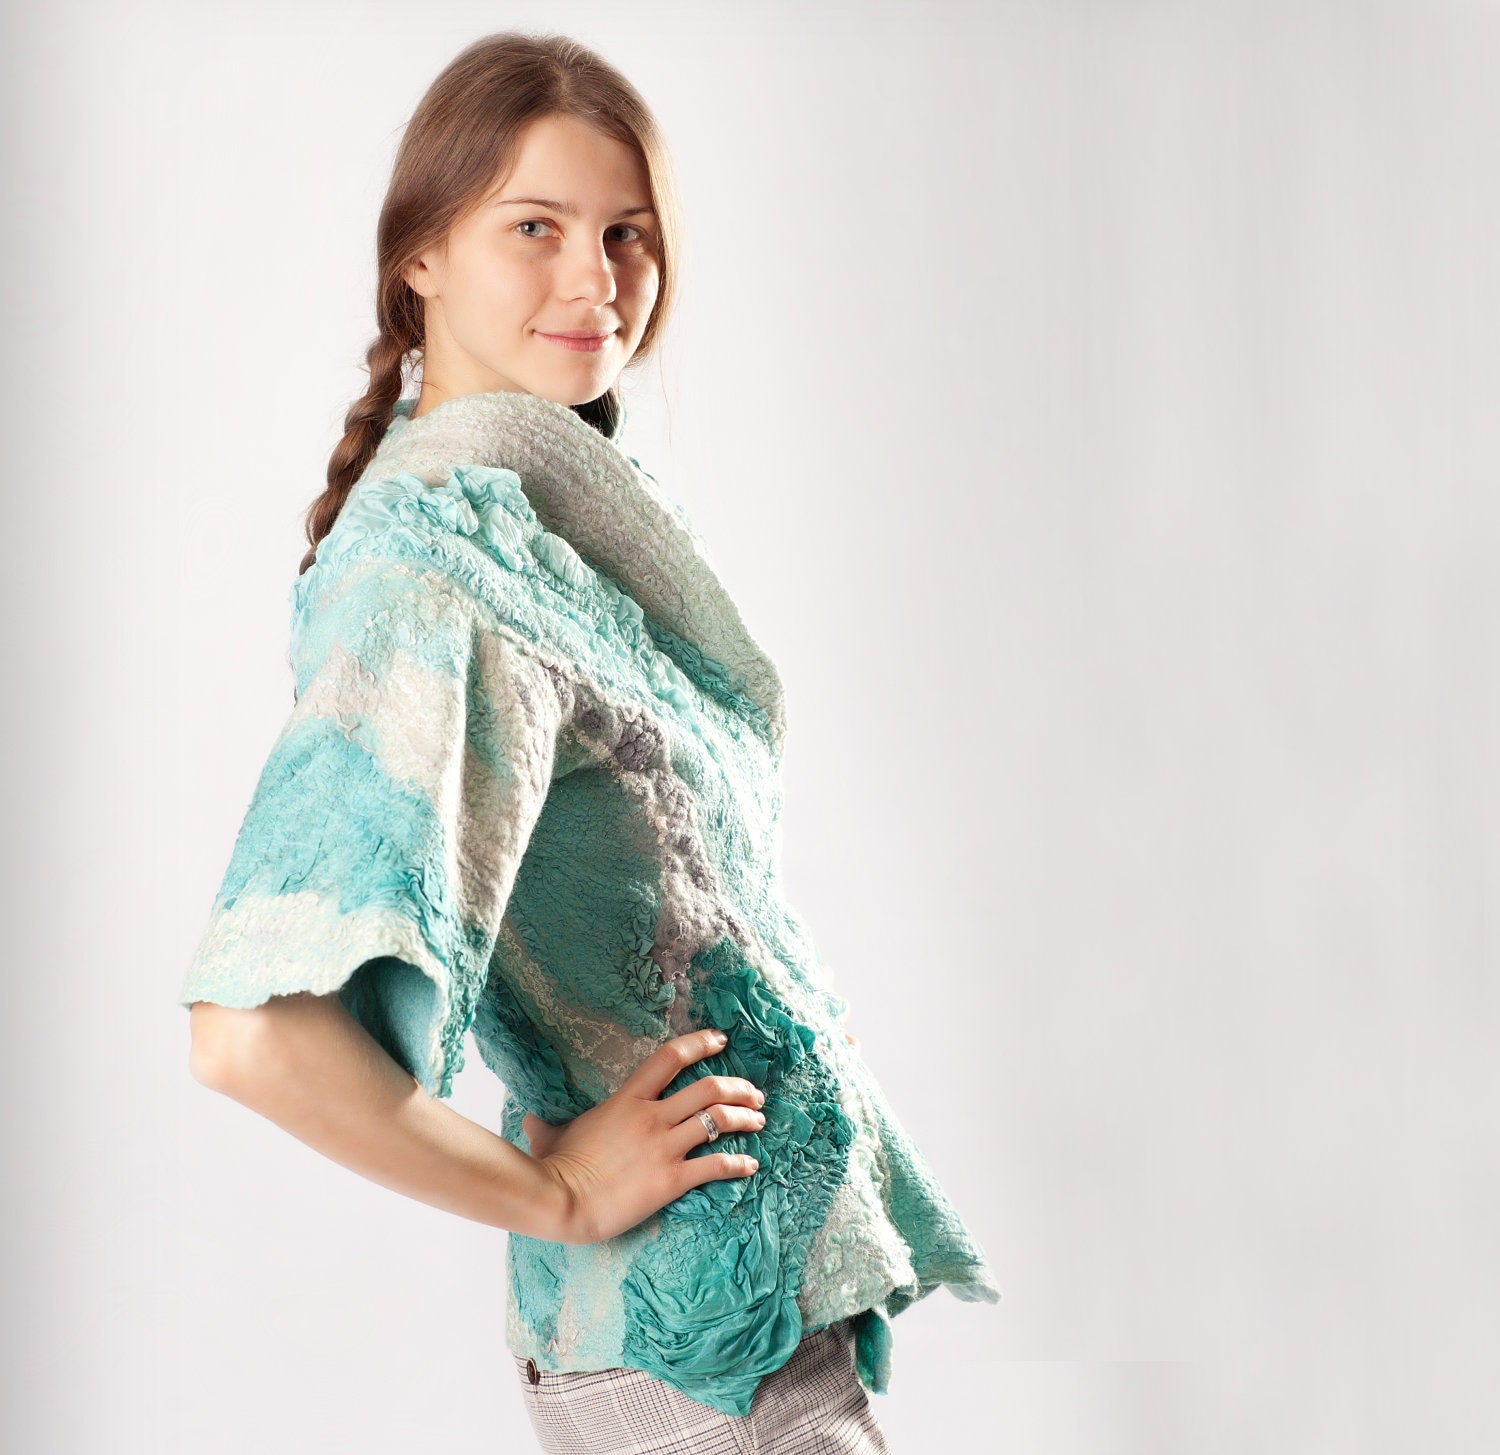 Nunofelted jacket kimono teal mint aqua turquoise blue women cropped grey wnter clothing denim size S M small medium - Baymut